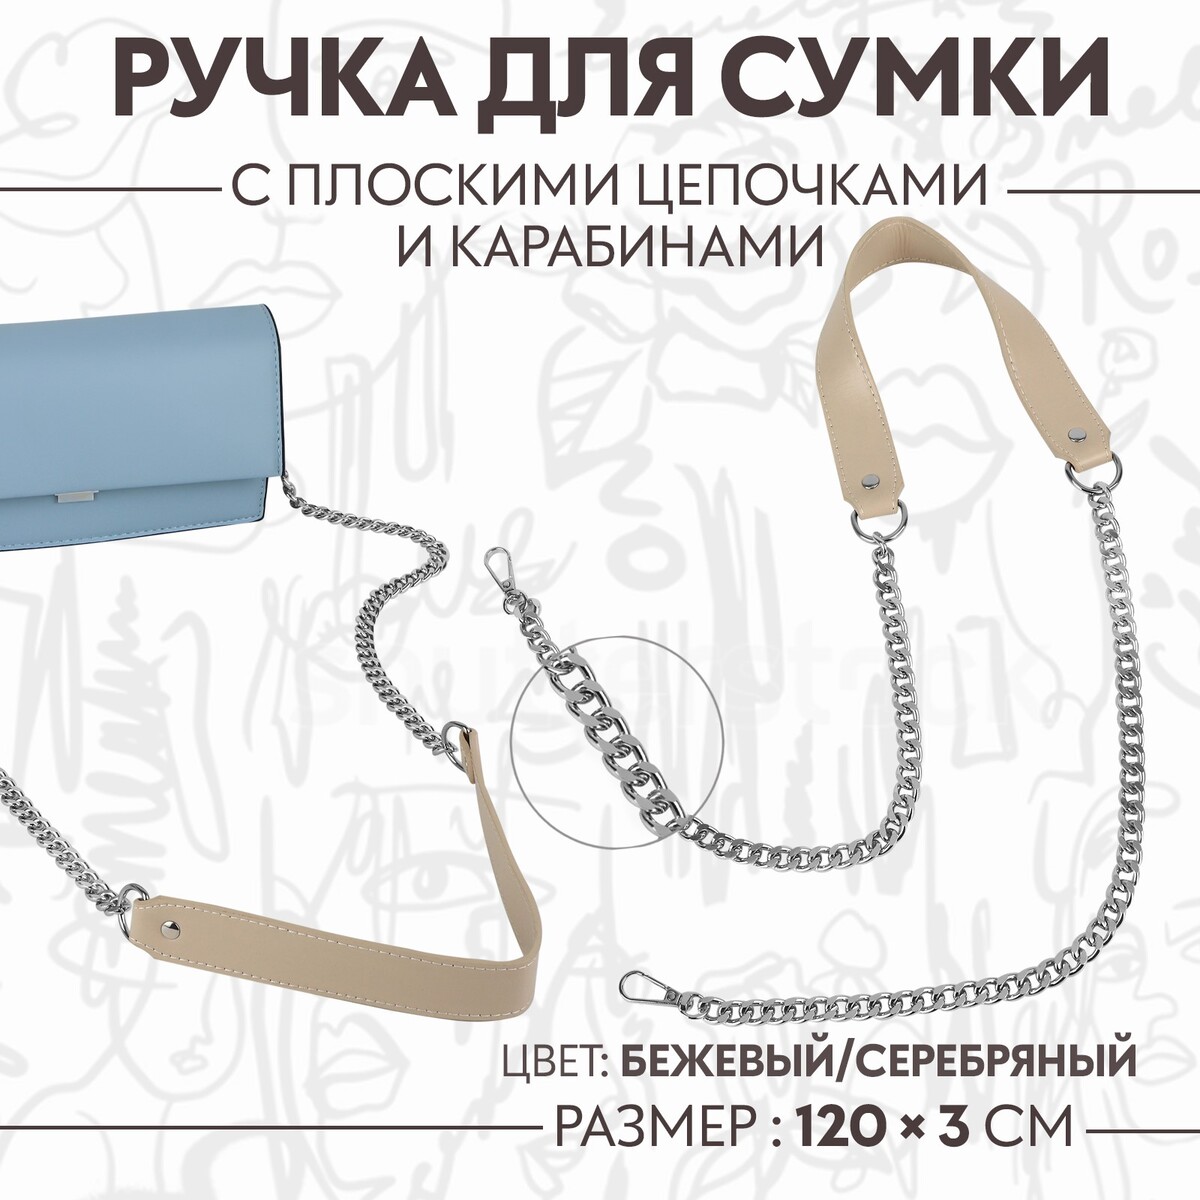 Ручка для сумки, с плоскими цепочками и карабинами, 120 × 3 см, цвет бежевый/серебряный ручка для сумки бамбук с цепочками и карабинами 60 см золотой